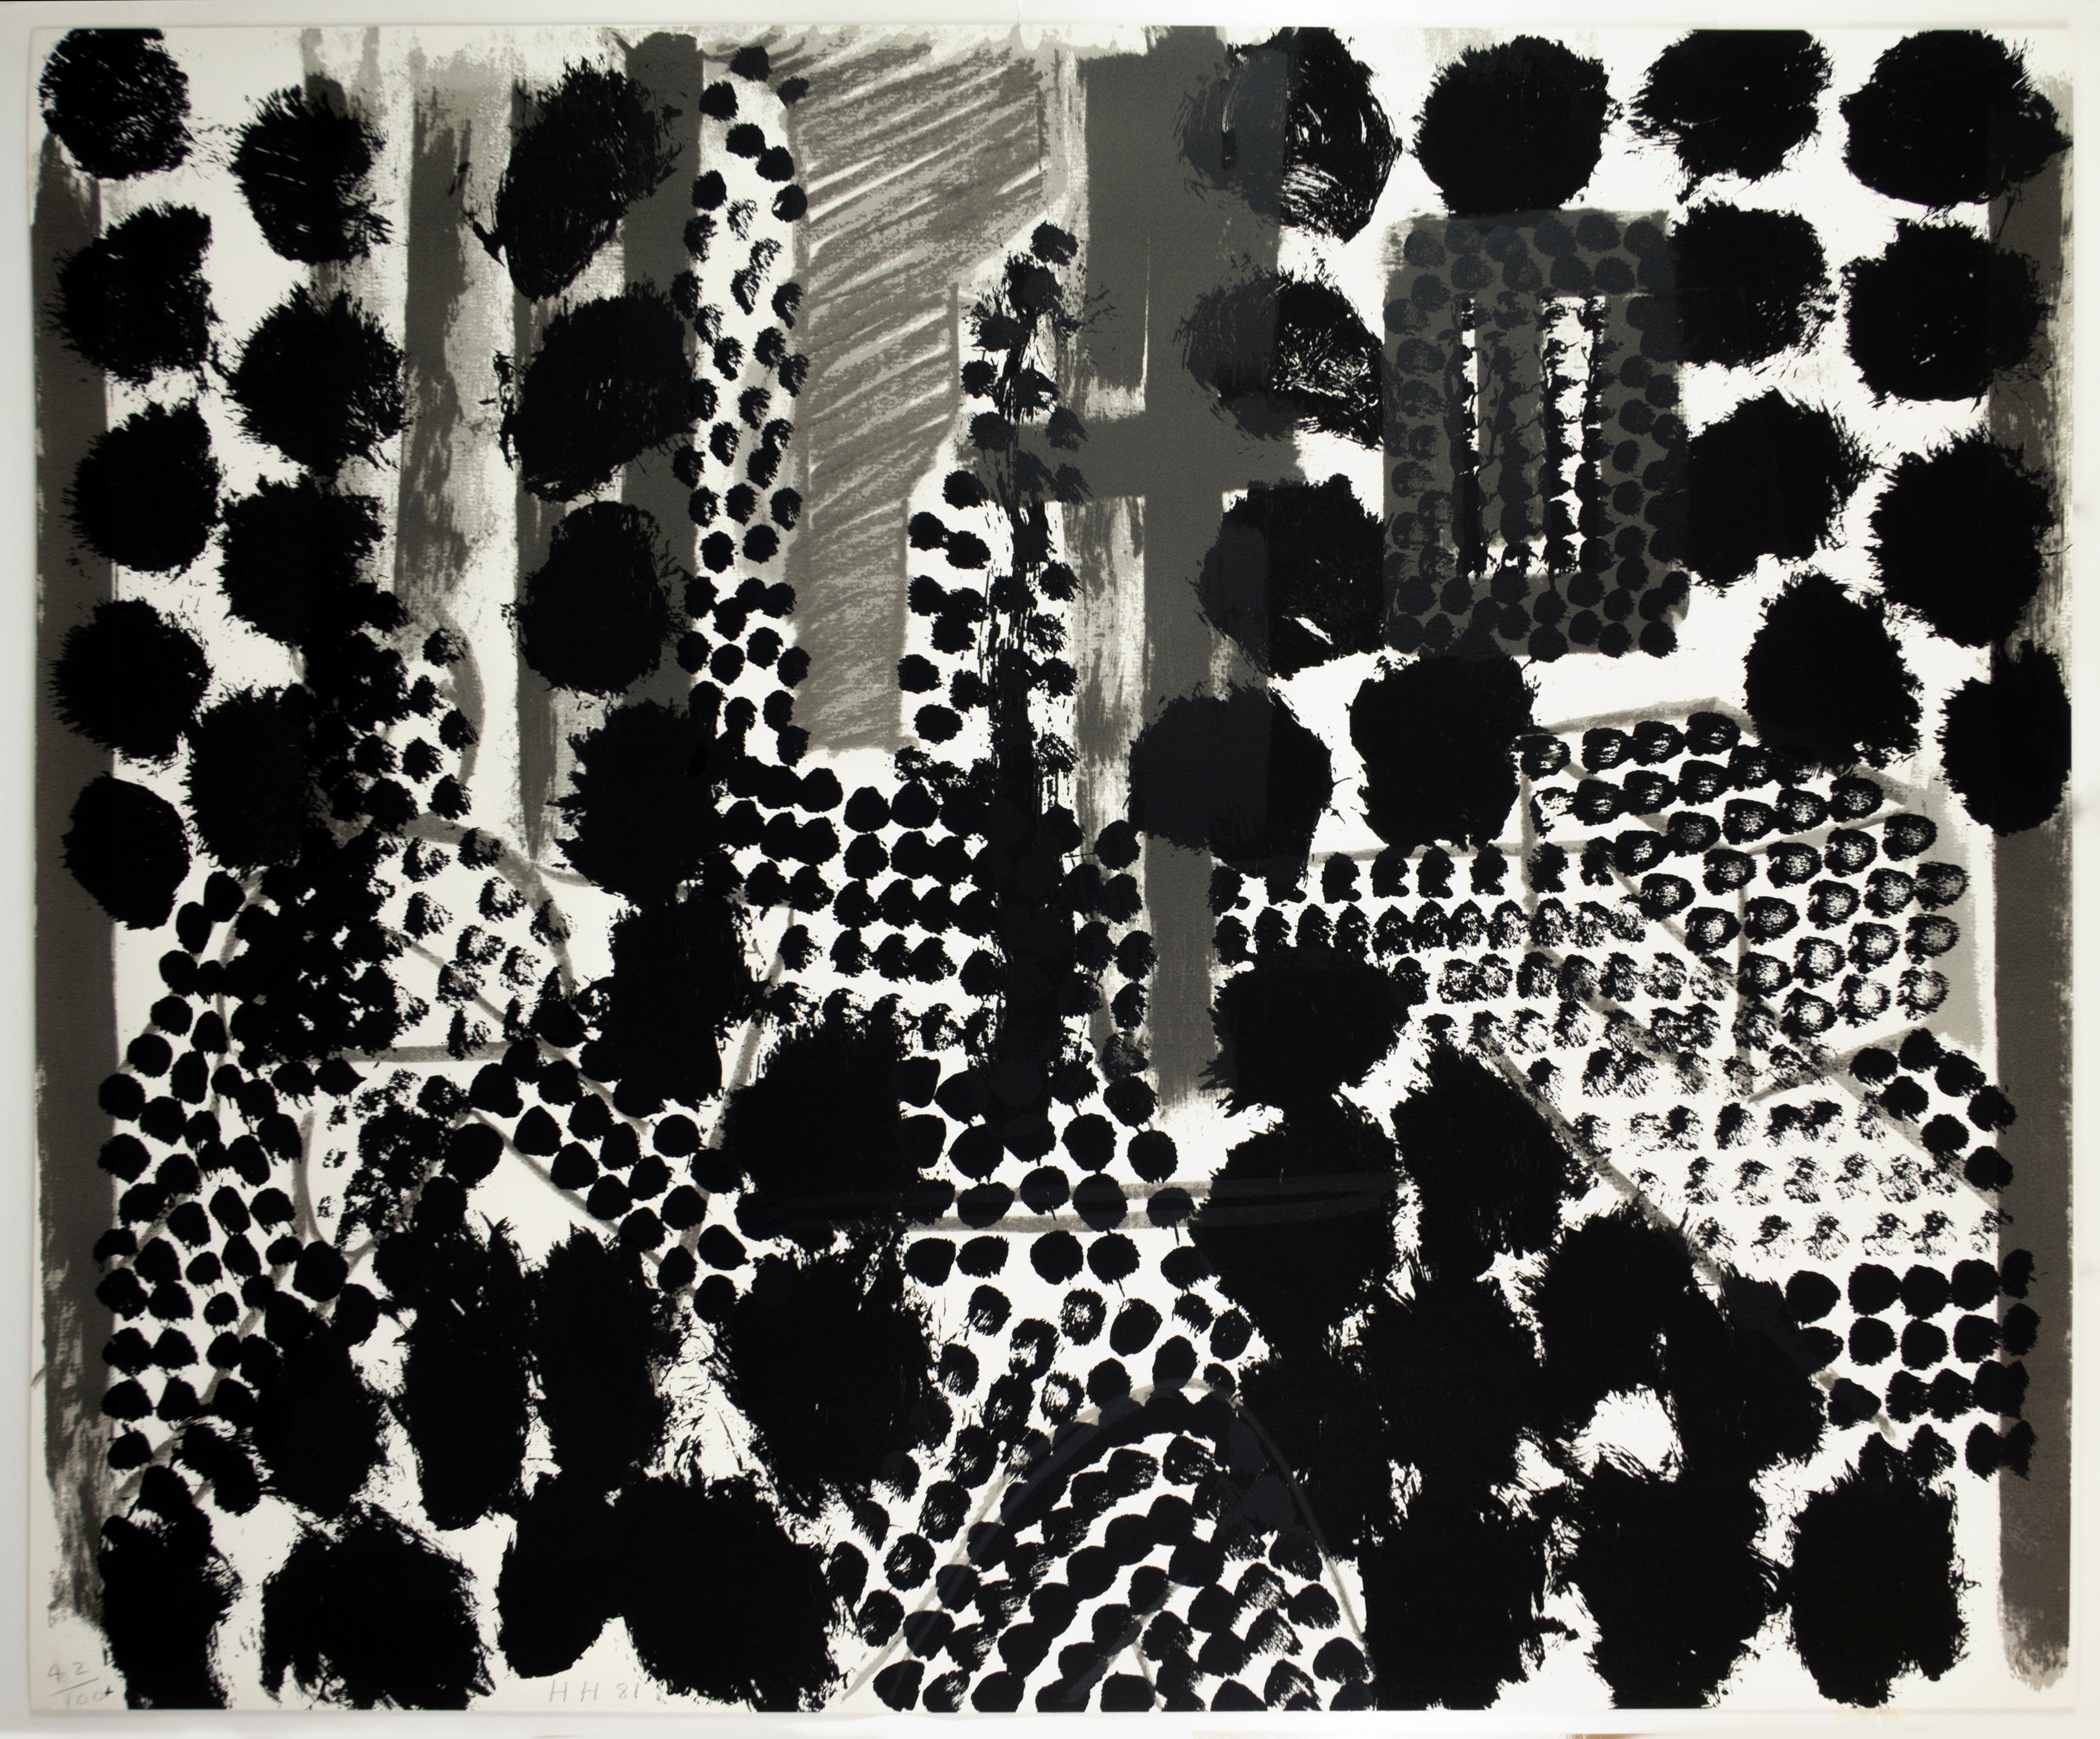 Scène d'intérieur abstraite en noir et blanc à très grande échelle avec des points, des lignes, des coups de pinceau, des taches de peinture, des empreintes digitales, des carrés et des rectangles. Impression saisissante à accrocher dans les espaces